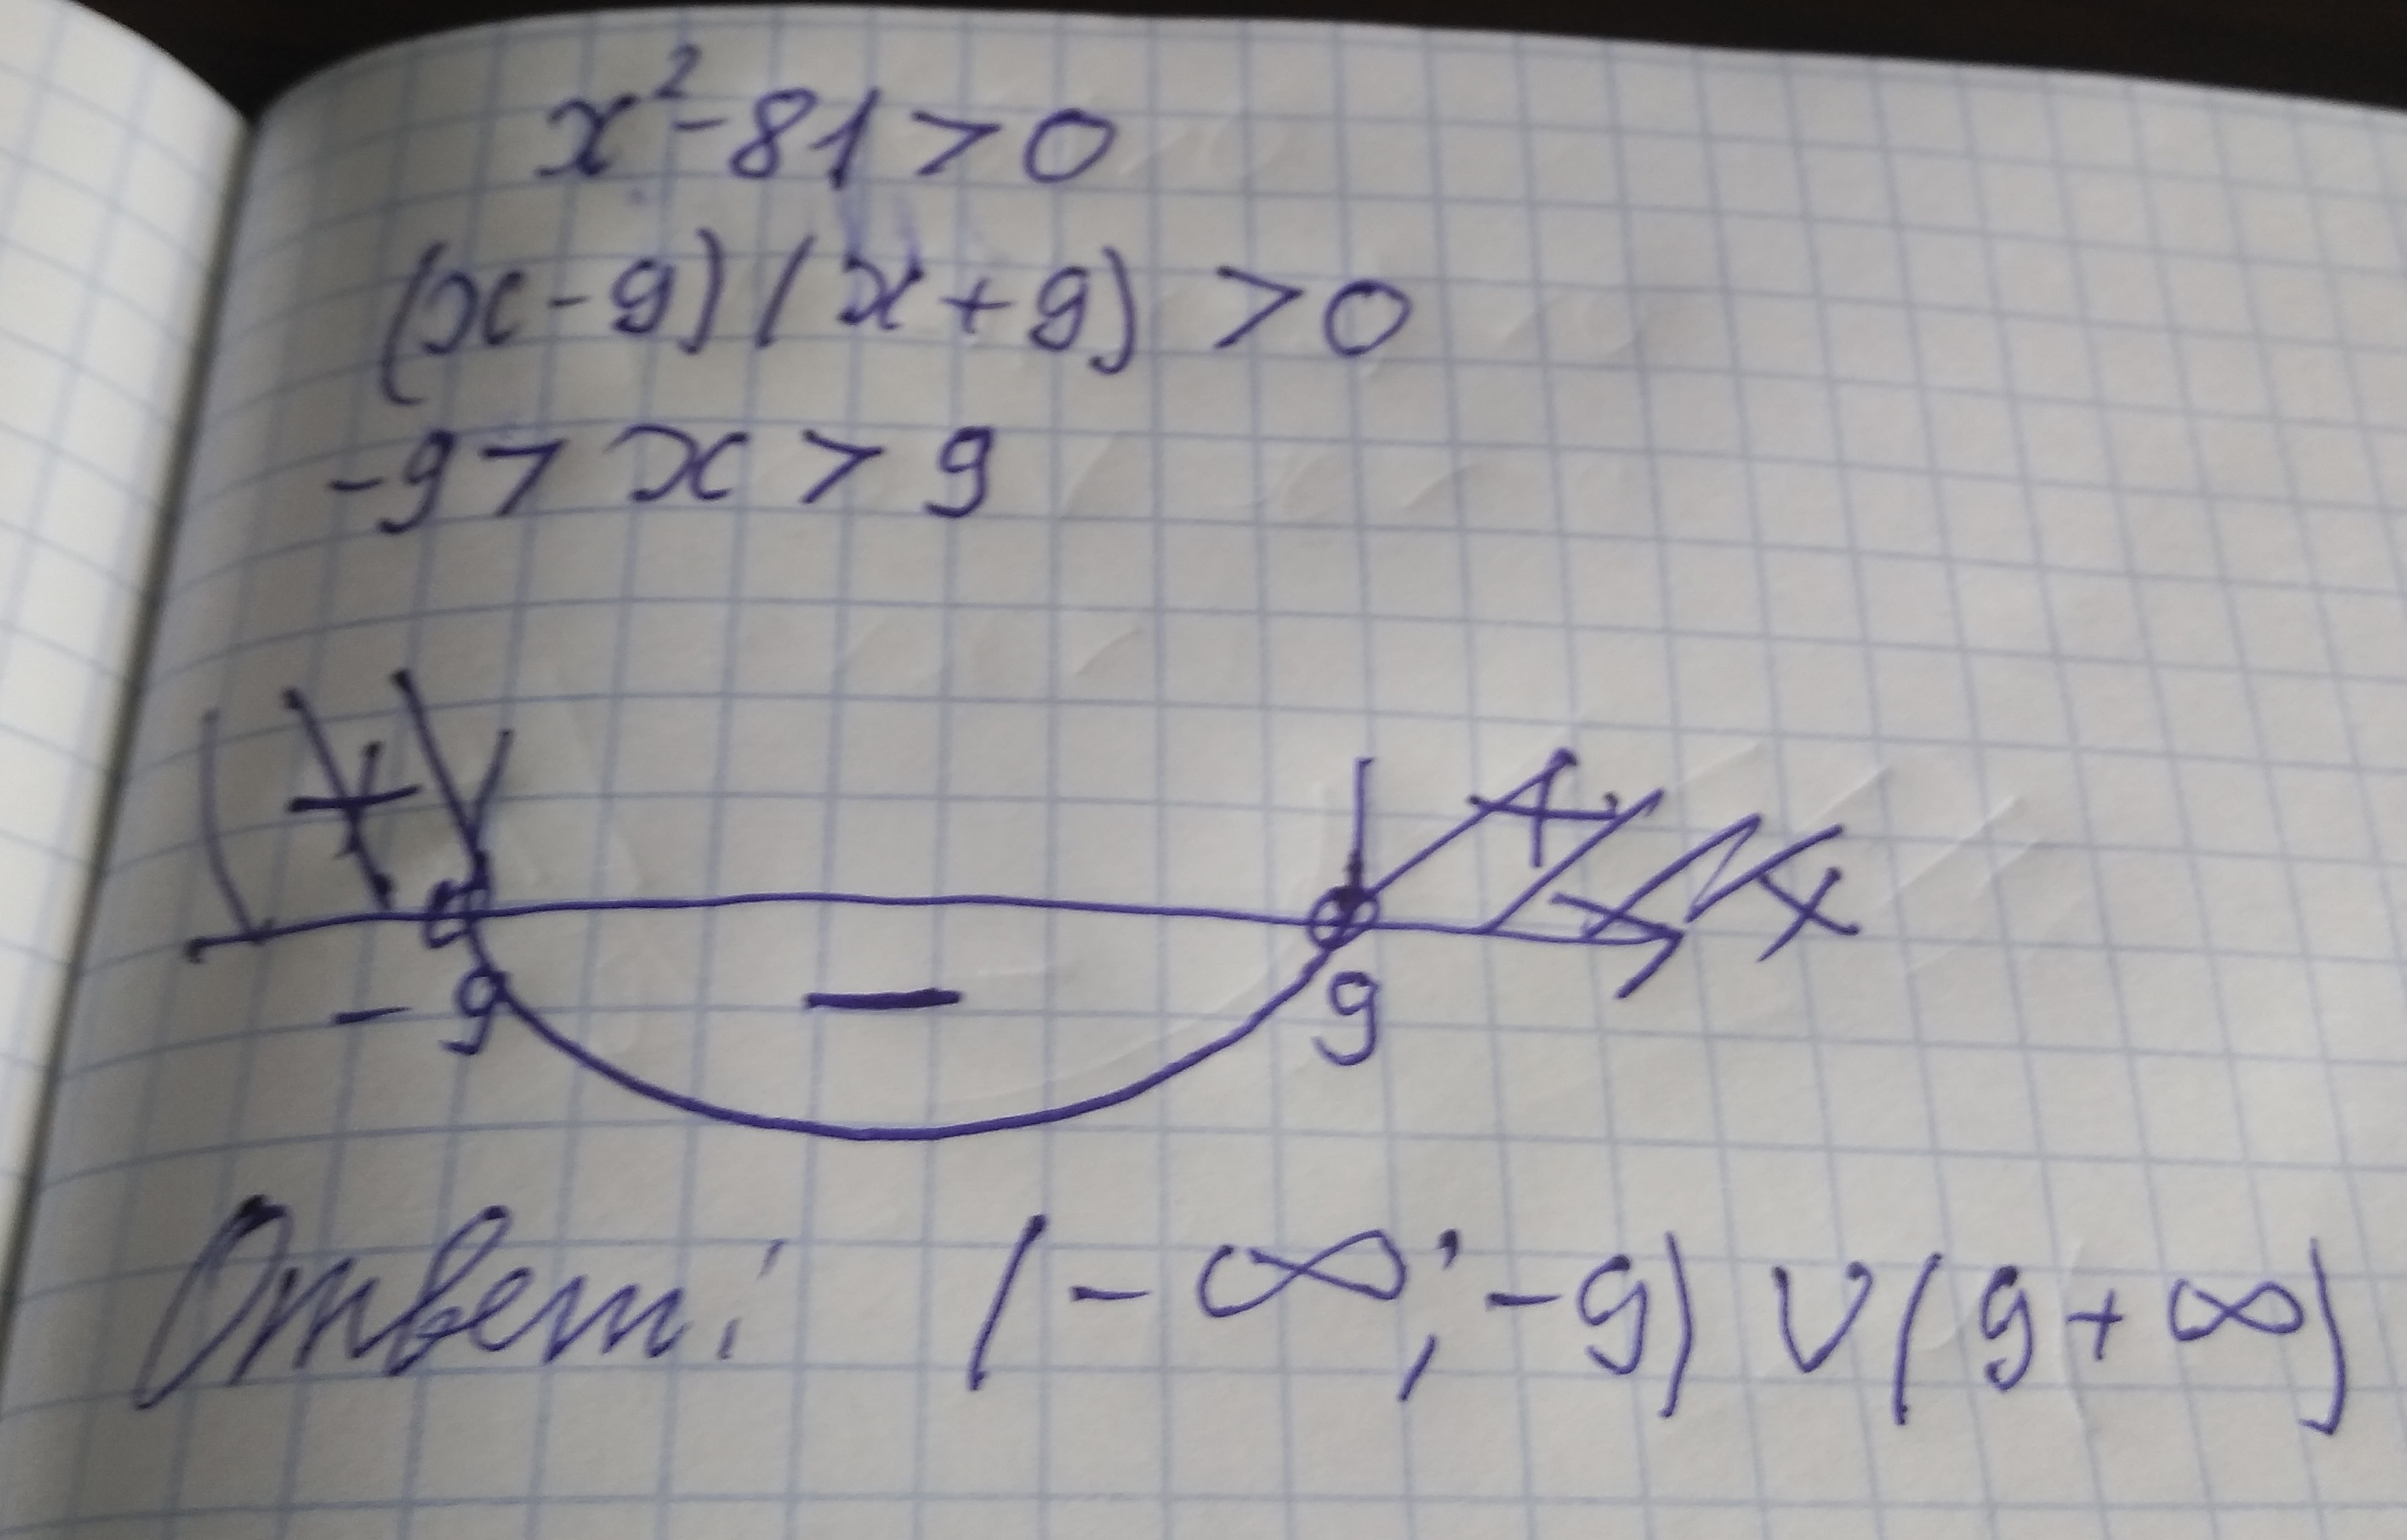 1 9 9 х 81. Решите неравенство x2 81. Неравенство x^2<81. X^2-81=0. X^2>81 решение неравенства.